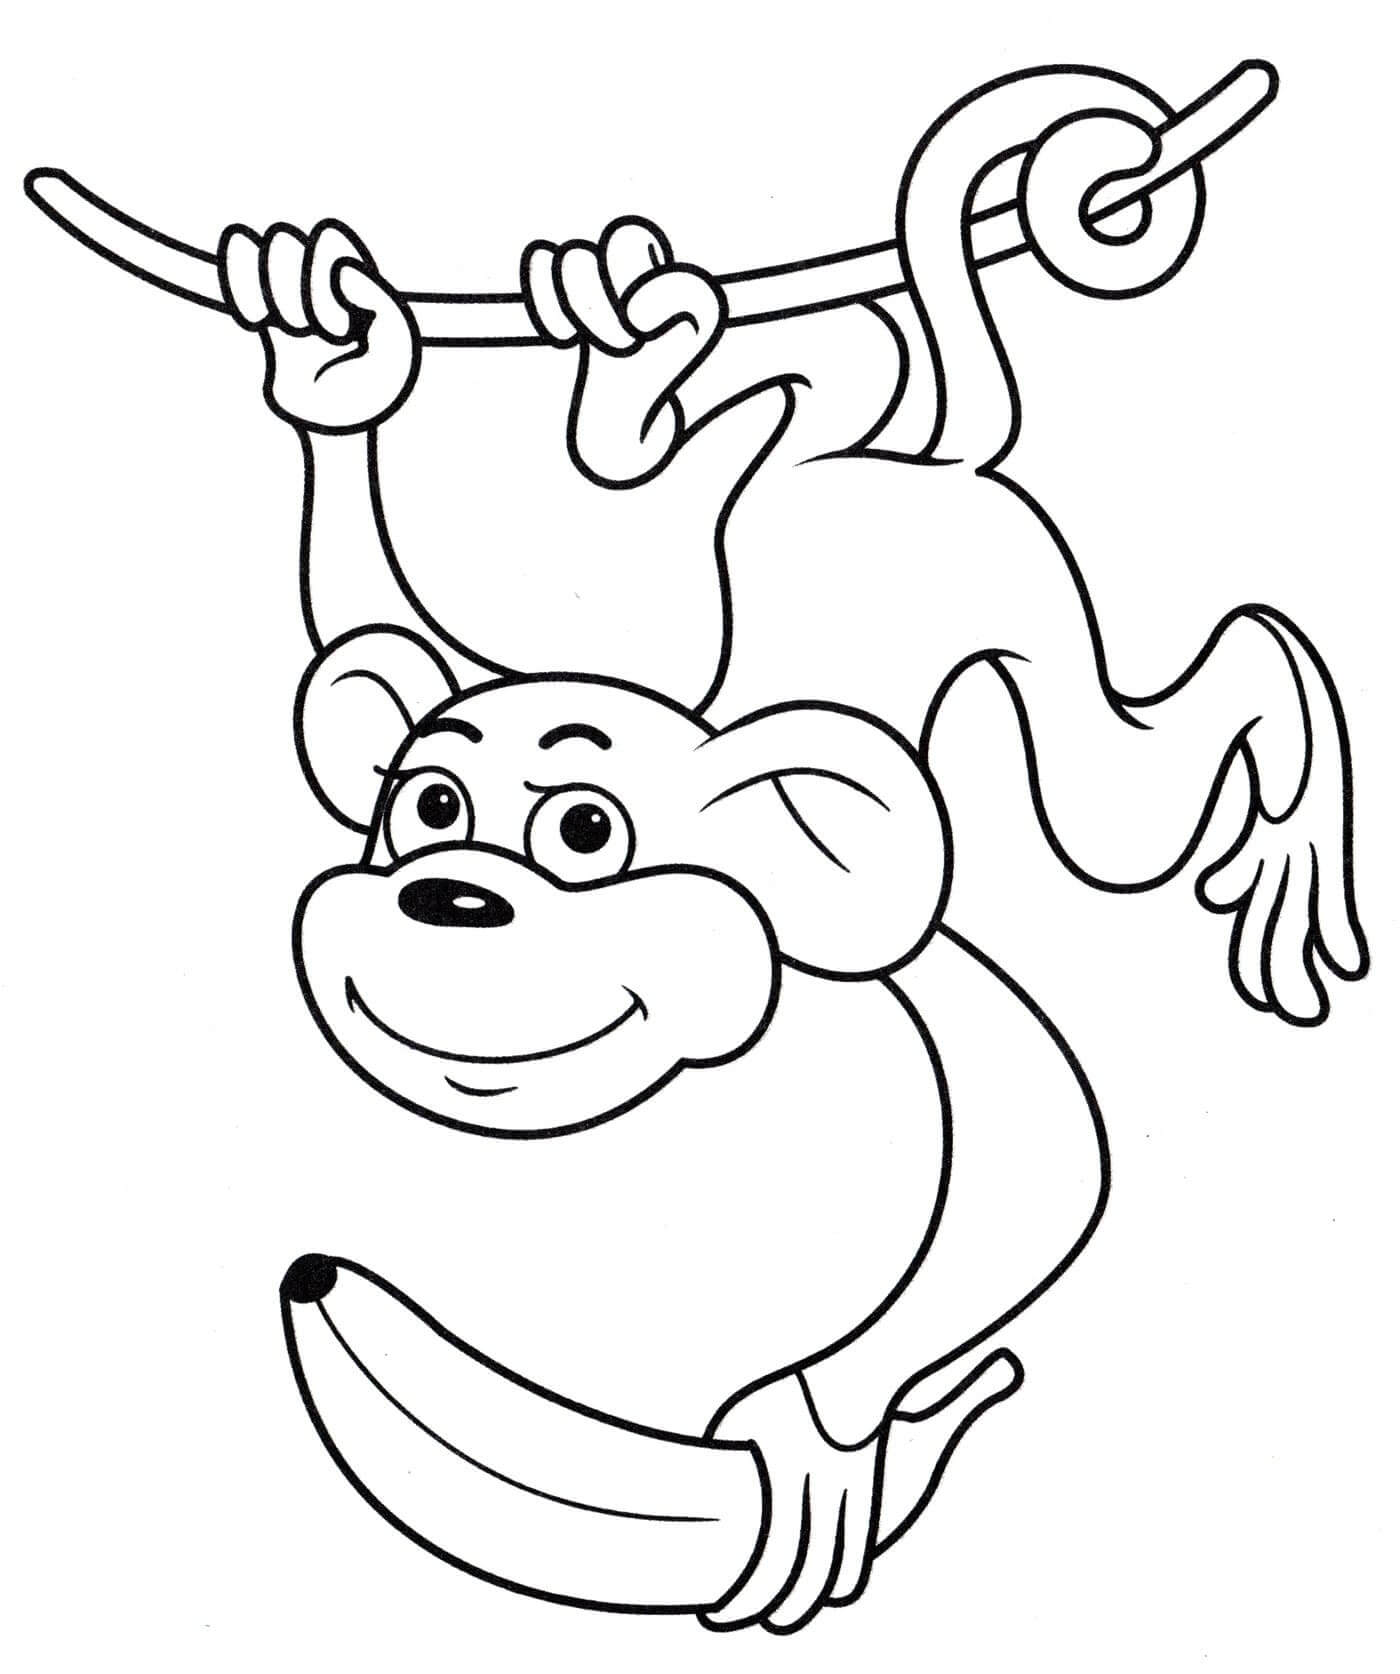 원숭이는 바나나와 등반 로프를 잡습니다.